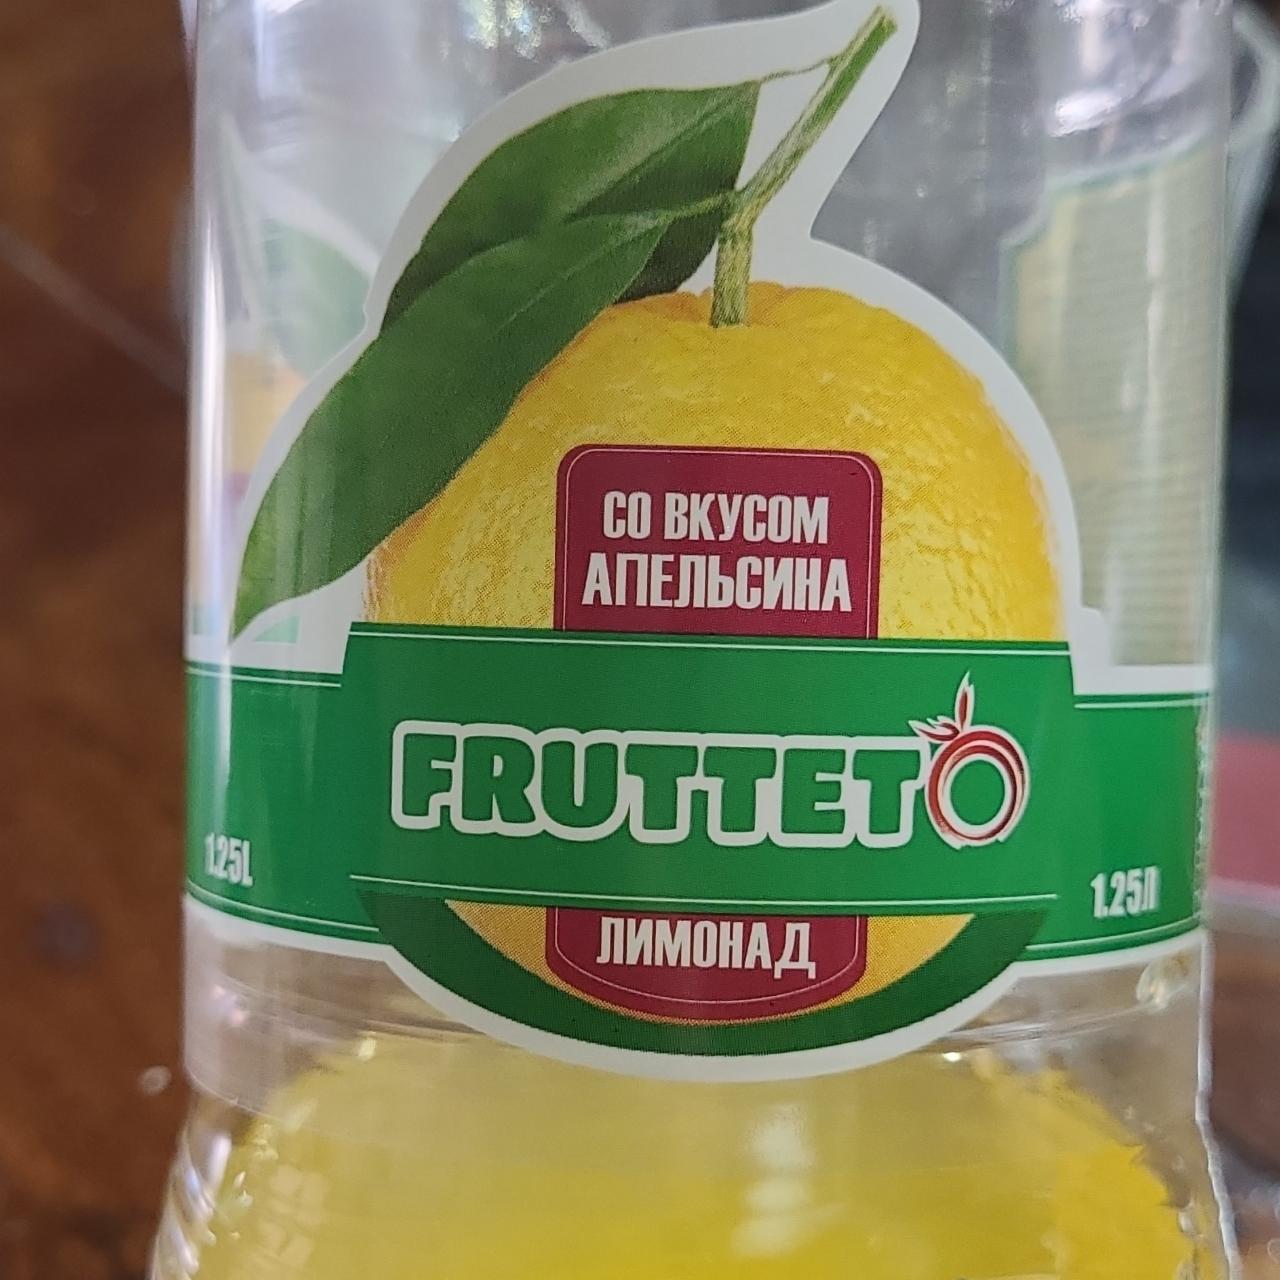 Фото - Лимонад со вкусом апельсина Frutteto